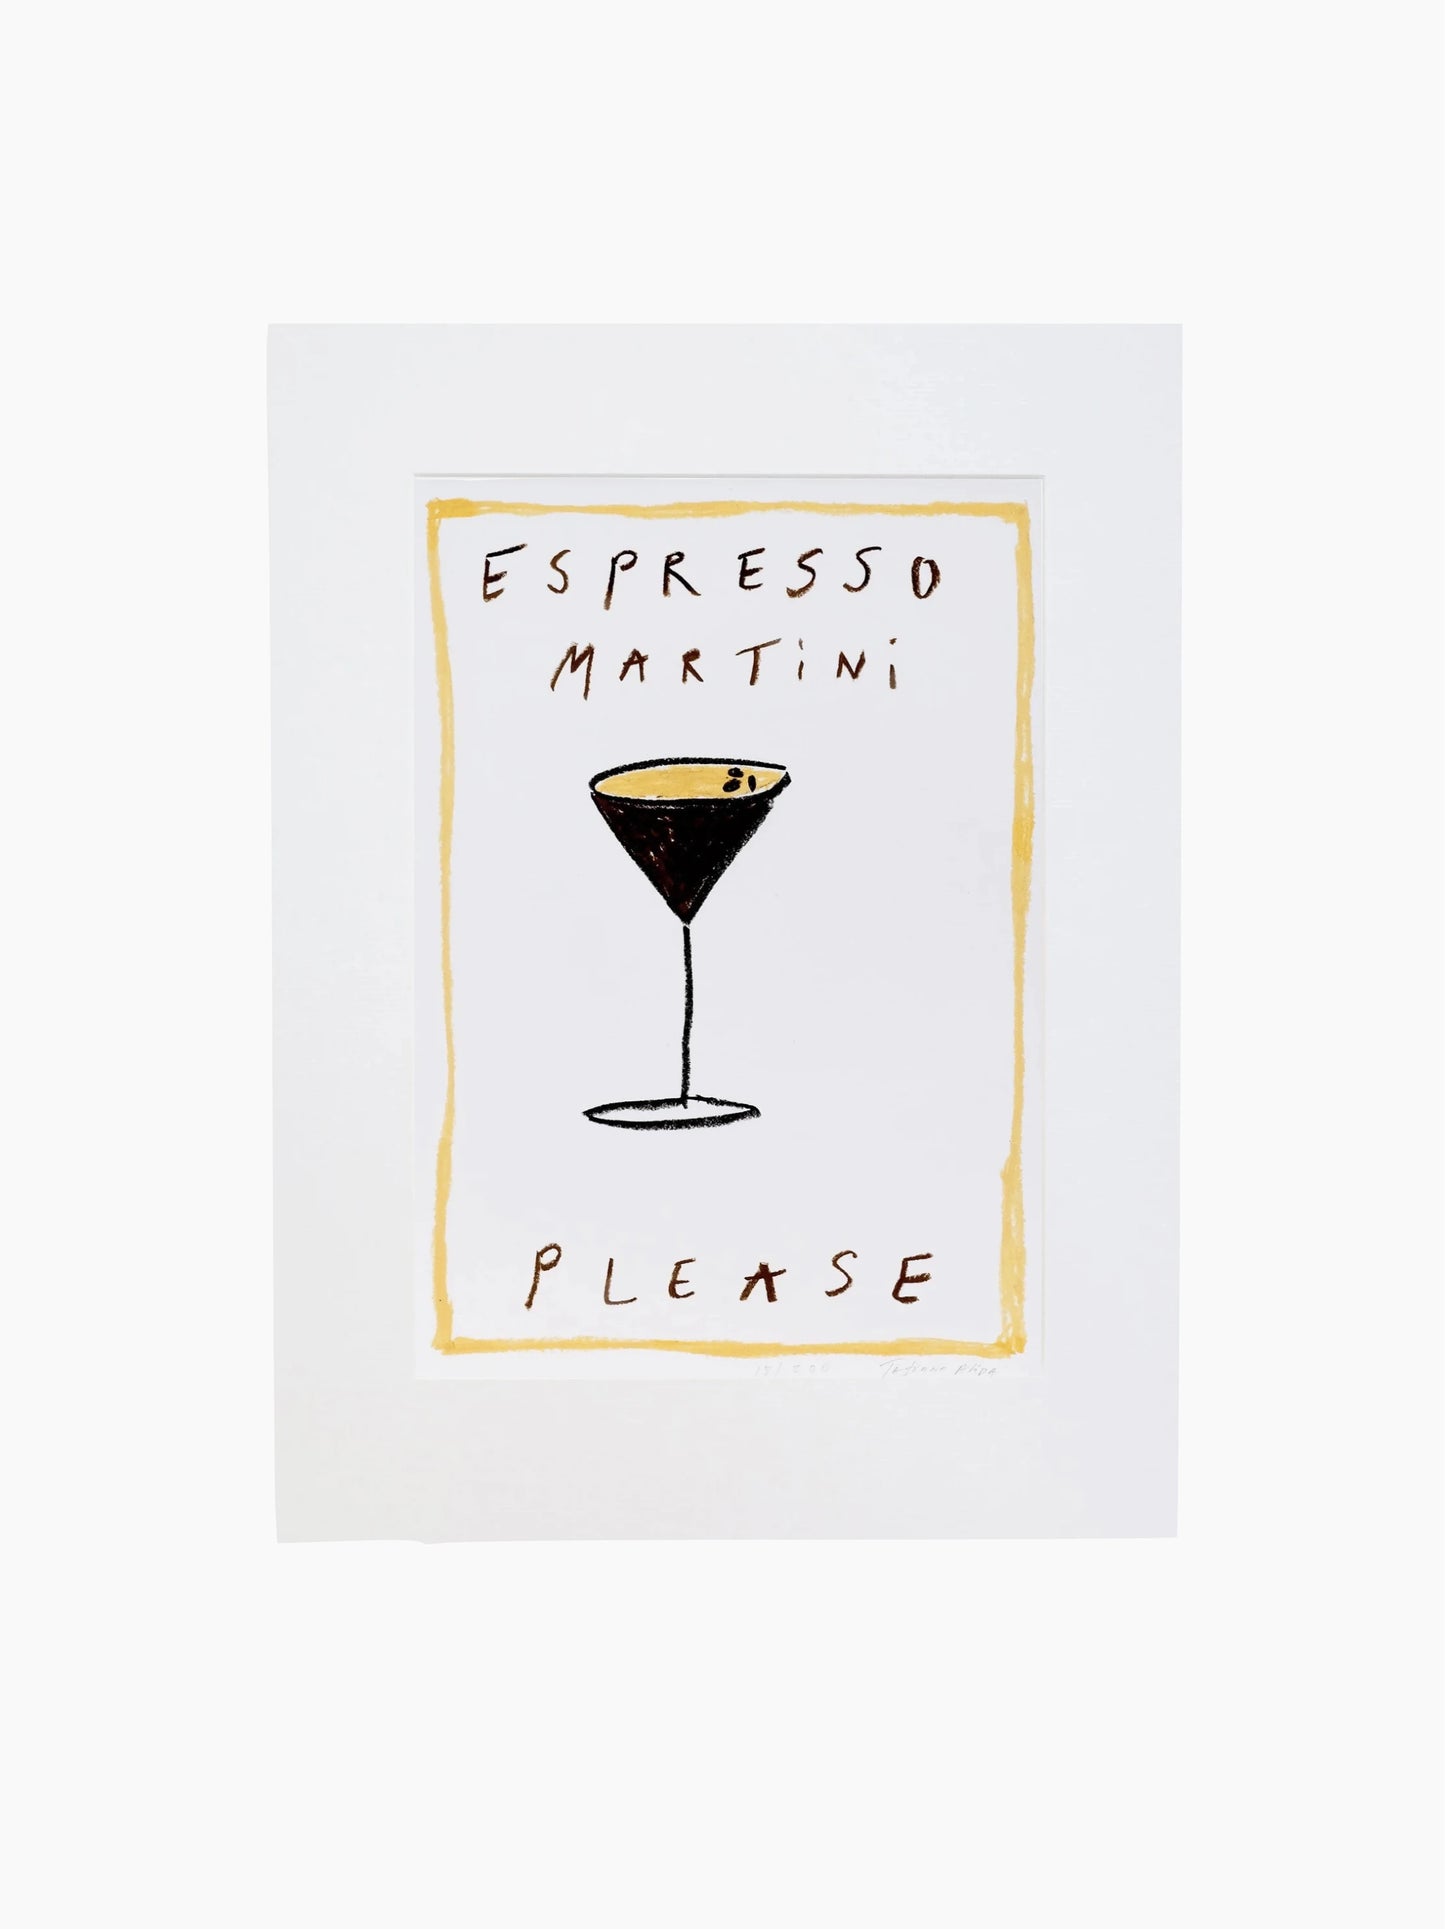 Espresso Martini Please Art Print